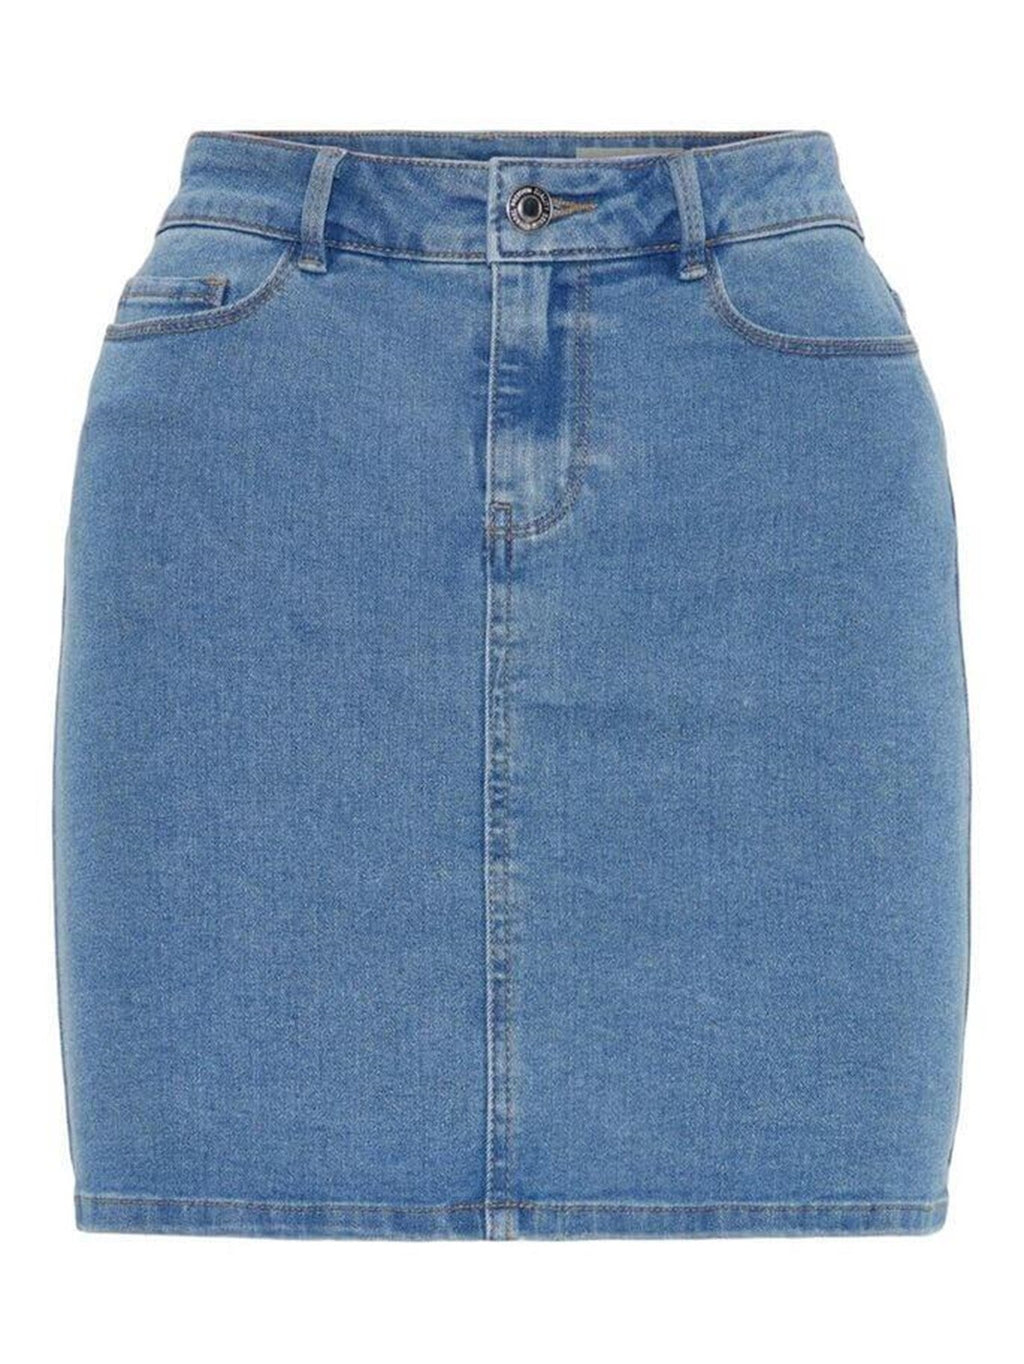 Karštas septynis sijonas - šviesiai mėlynas džinsinis audinys